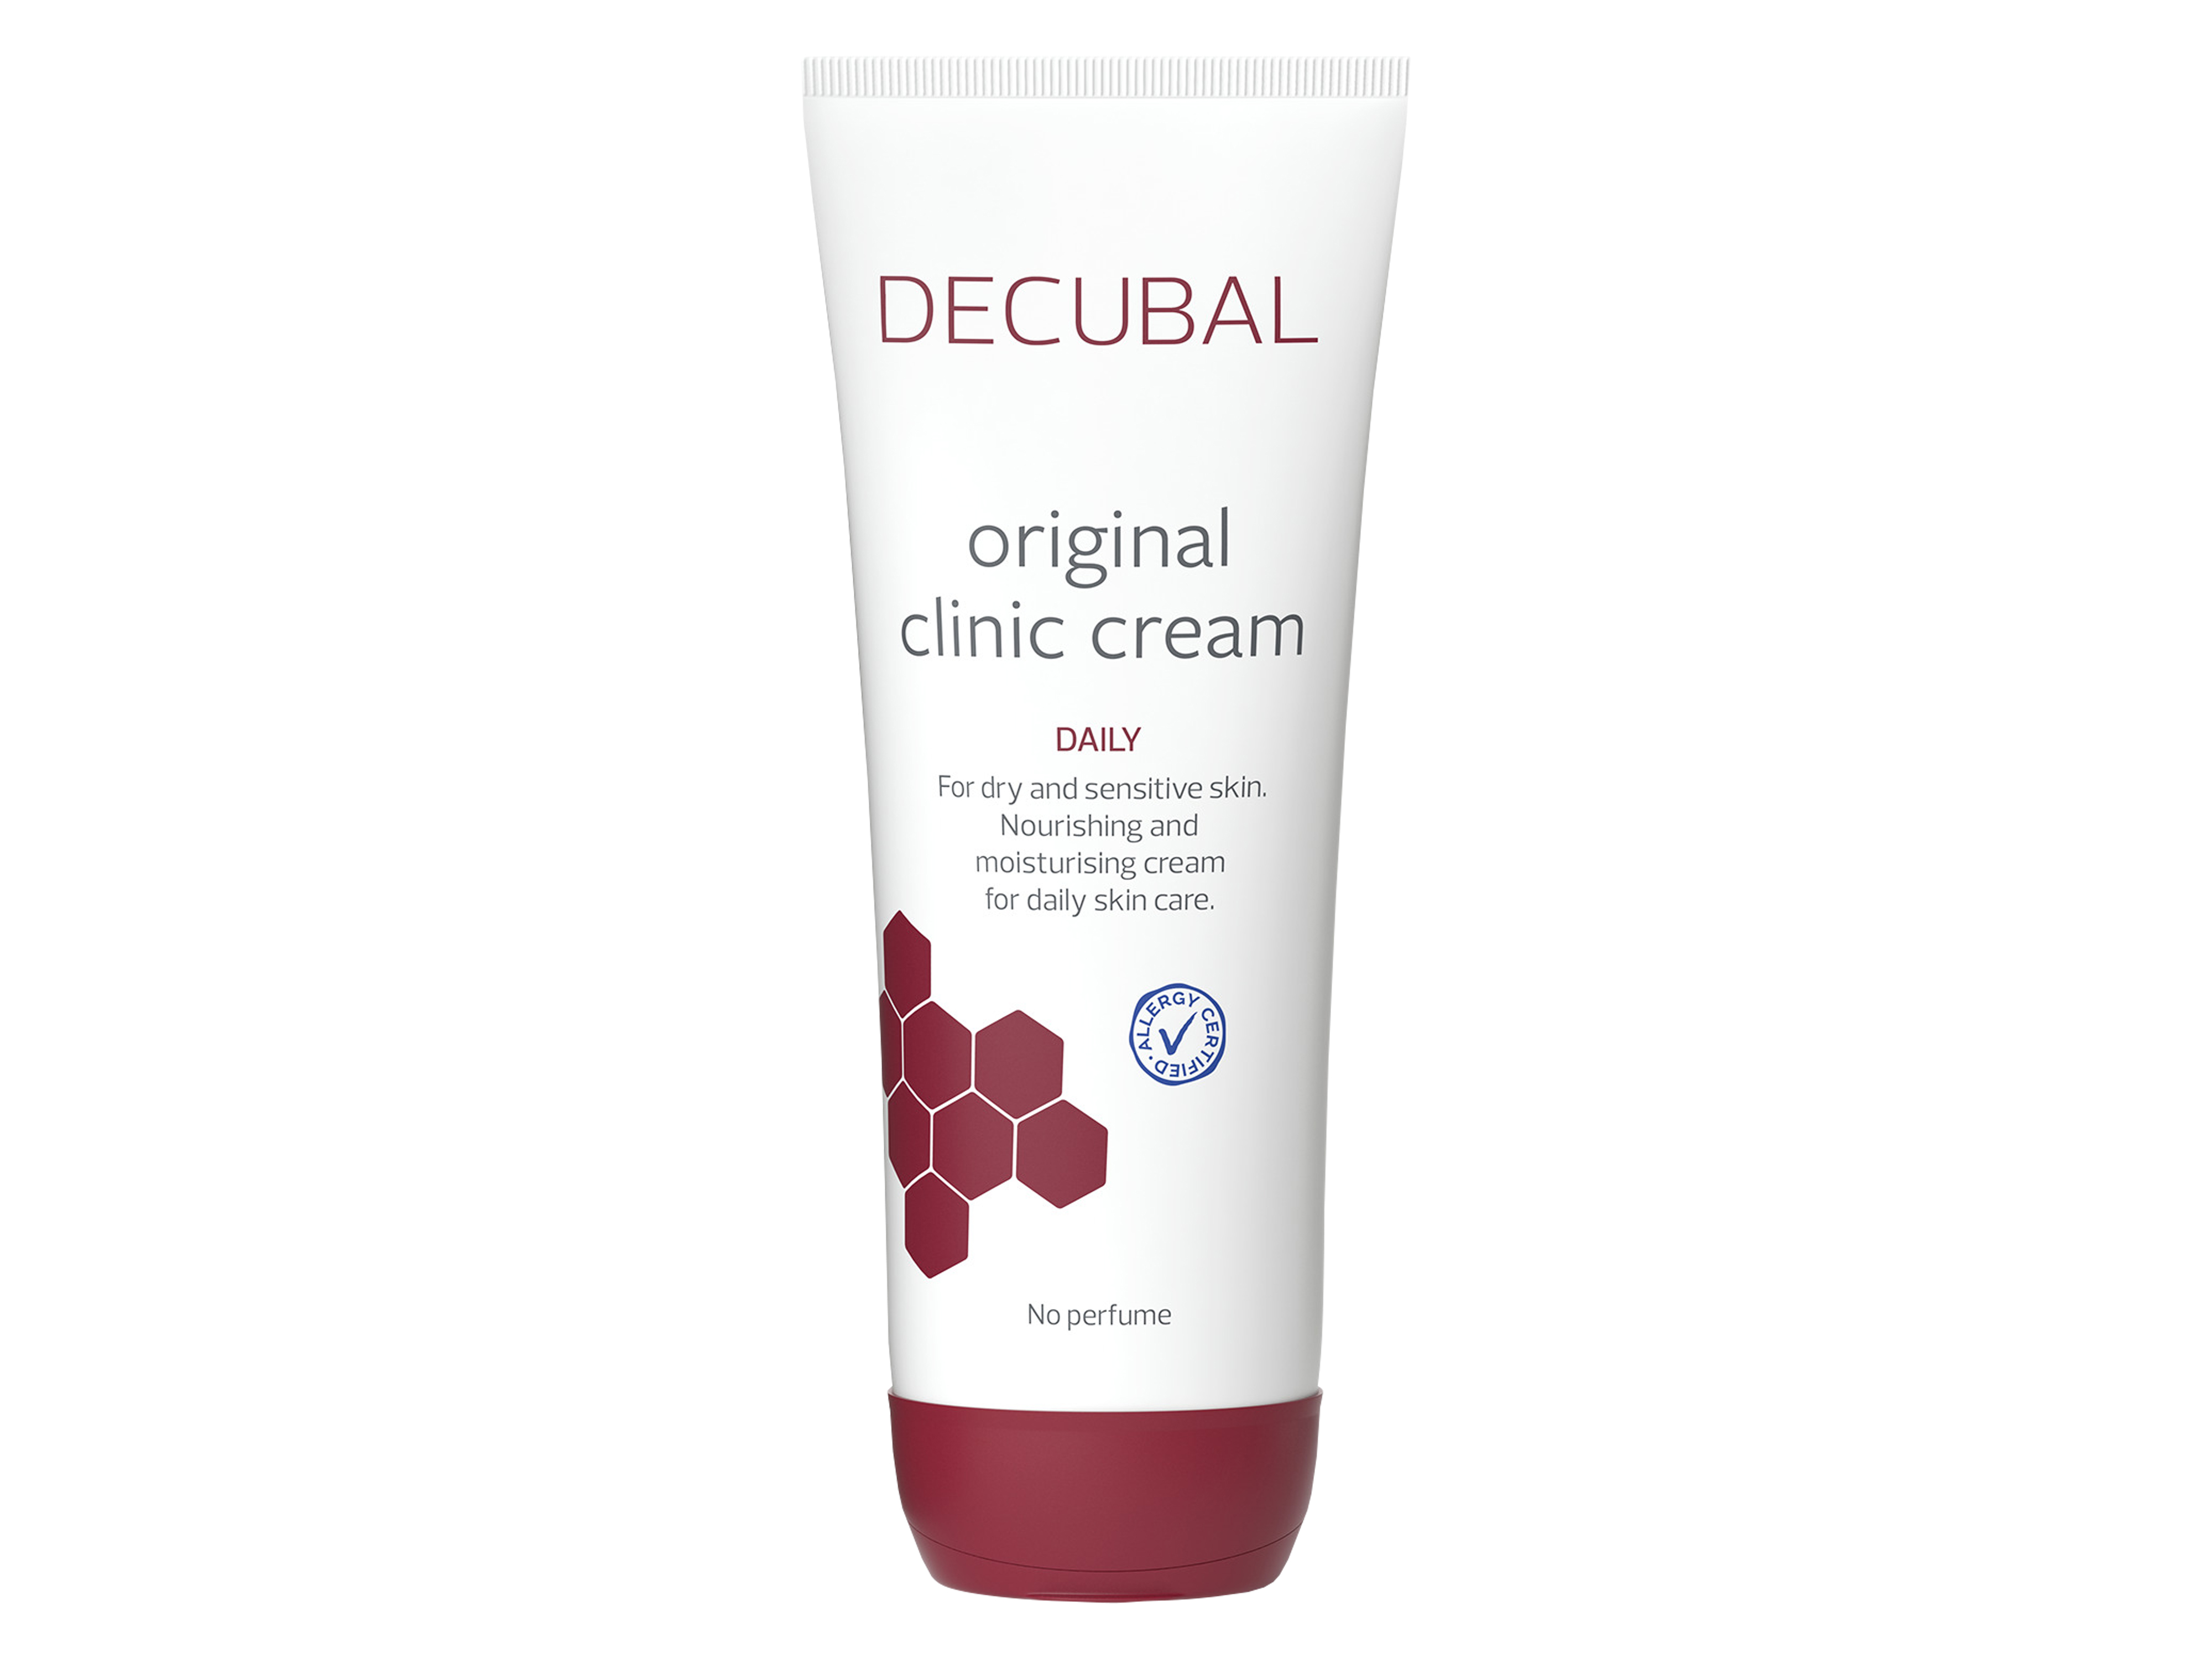 Decubal Original Clinic Cream, 250 gram